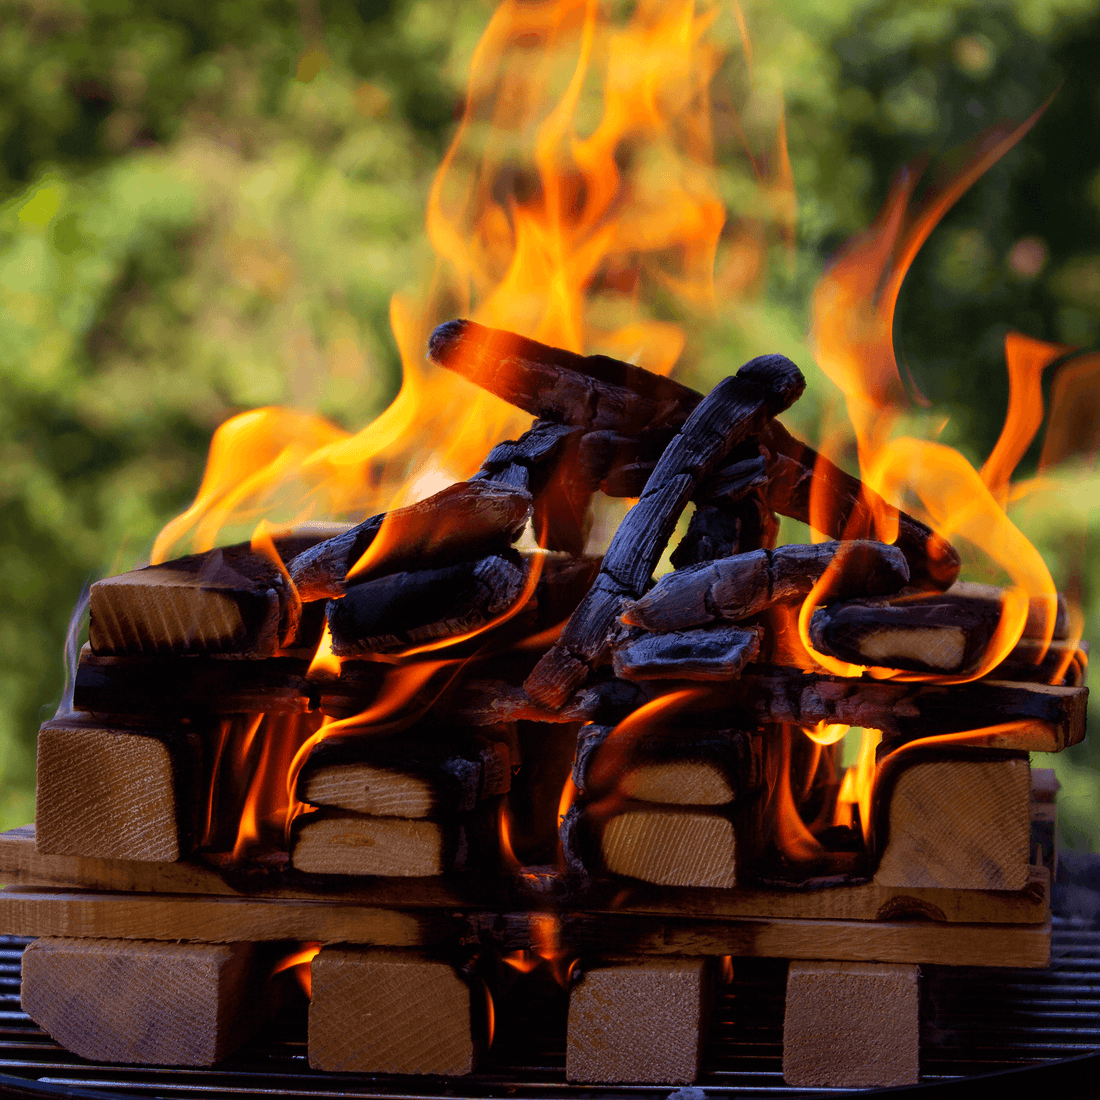 legna da ardere delegn accesa per barbecue all aperto fuoco